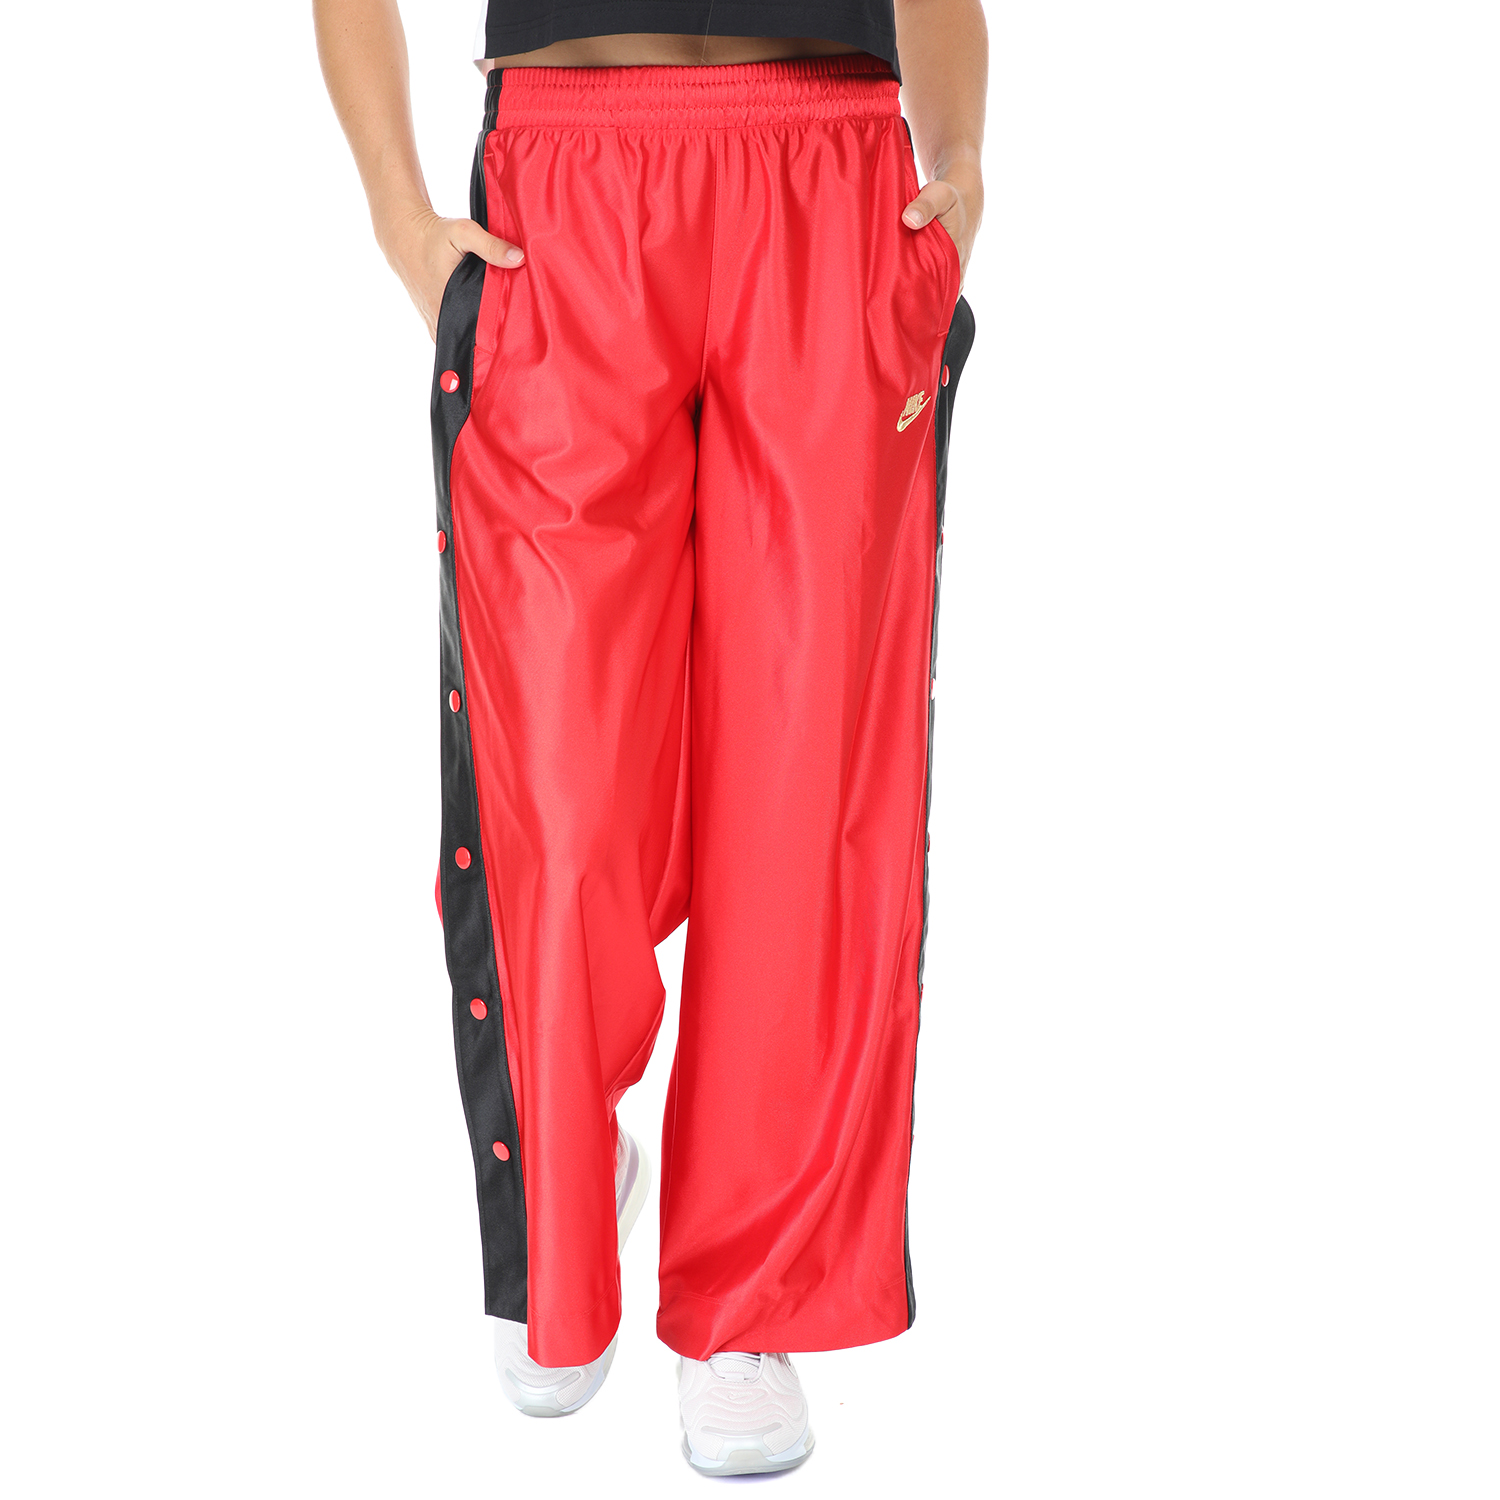 Γυναικεία/Ρούχα/Αθλητικά/Φόρμες NIKE - Γυναικείο παντελόνι φόρμας Nike NSW POPPER PANT GLM DNK κόκκινο